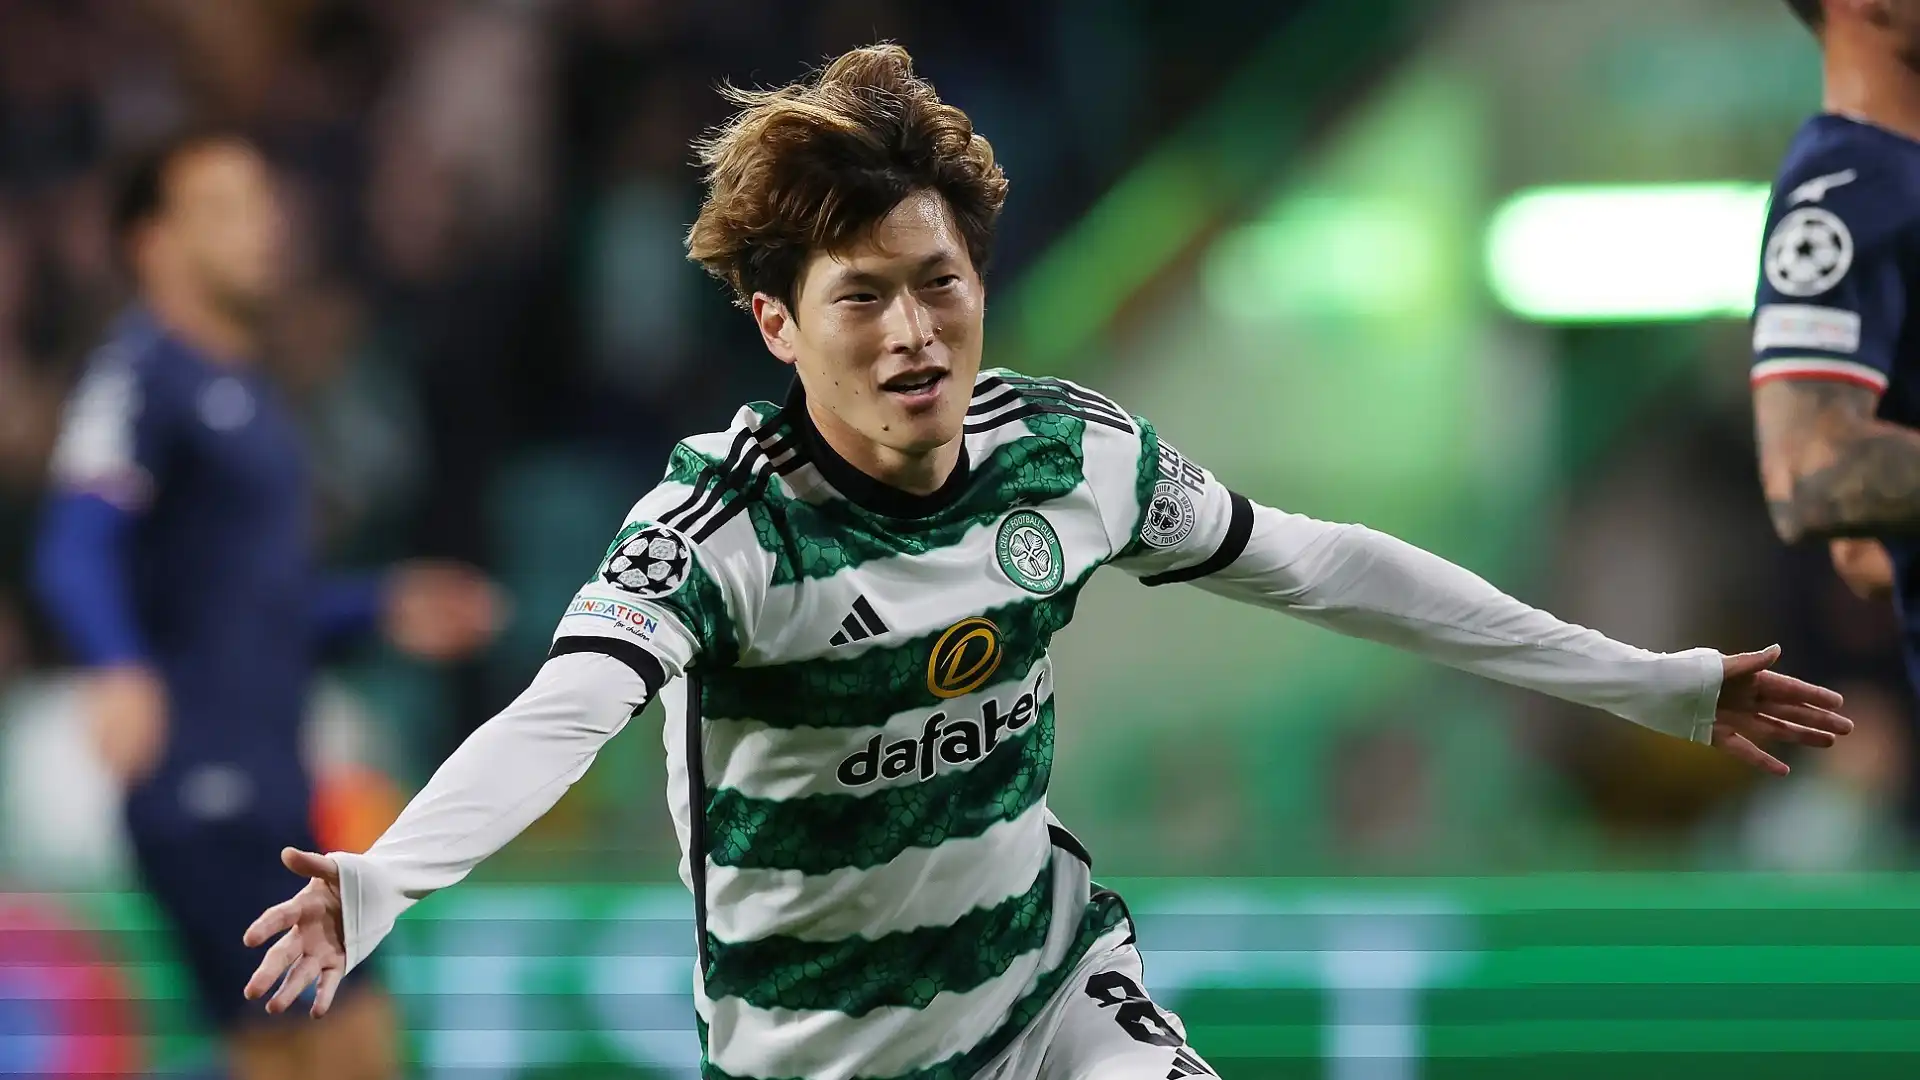 Kyogo Furuhashi (Attaccante, Celtic): 12,5 milioni di euro. Ha segnato 34 gol con il Celtic nella scorsa stagione